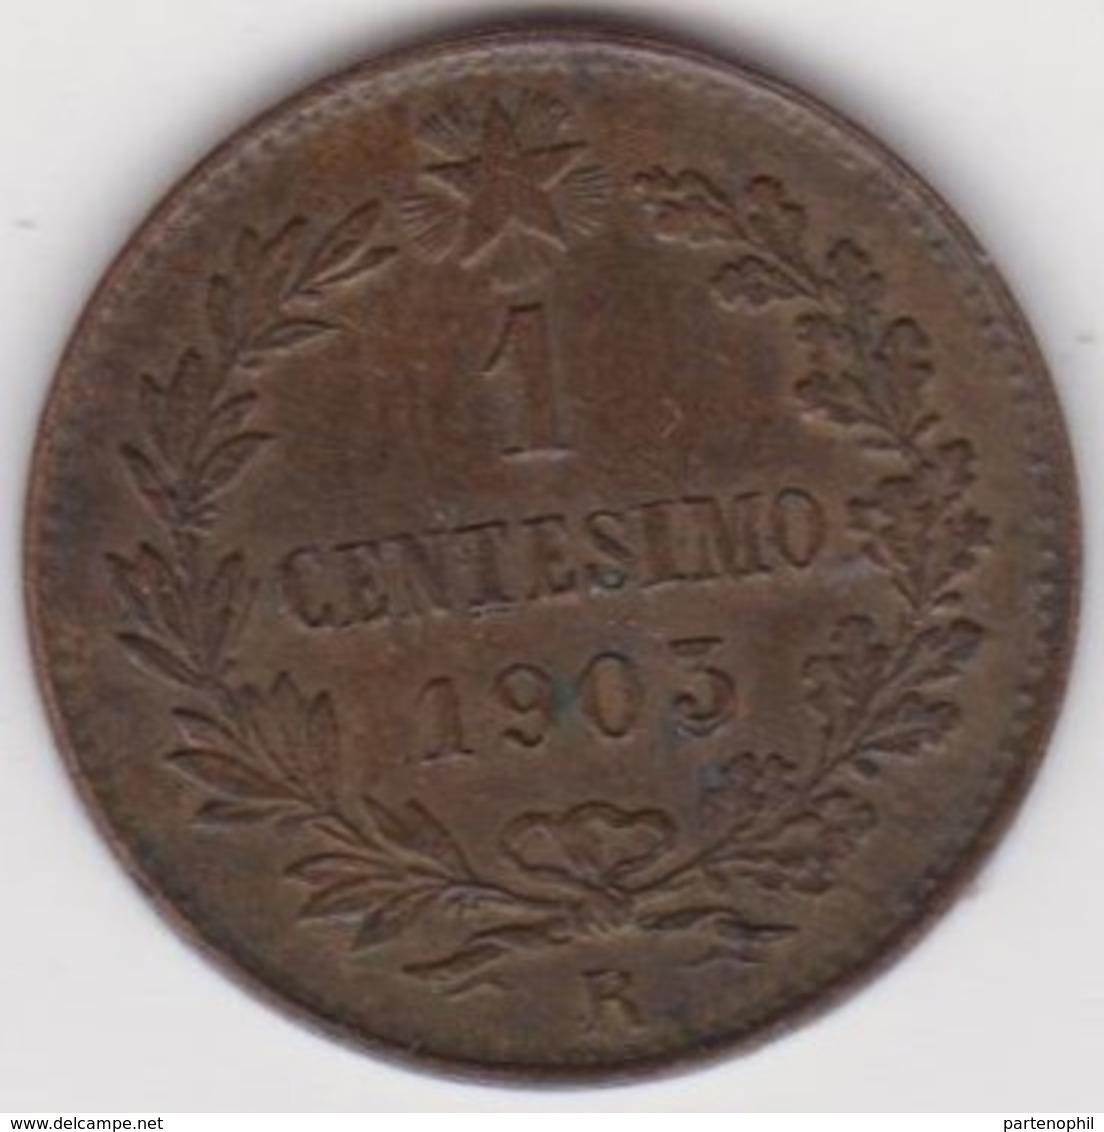 656 - Italia Regno Monete : Lotto di 13 monete - Umberto I 1883 L. 2 BB+/SPL - V. Emanuele III 1907 L. 1 SPL - Aquilotto